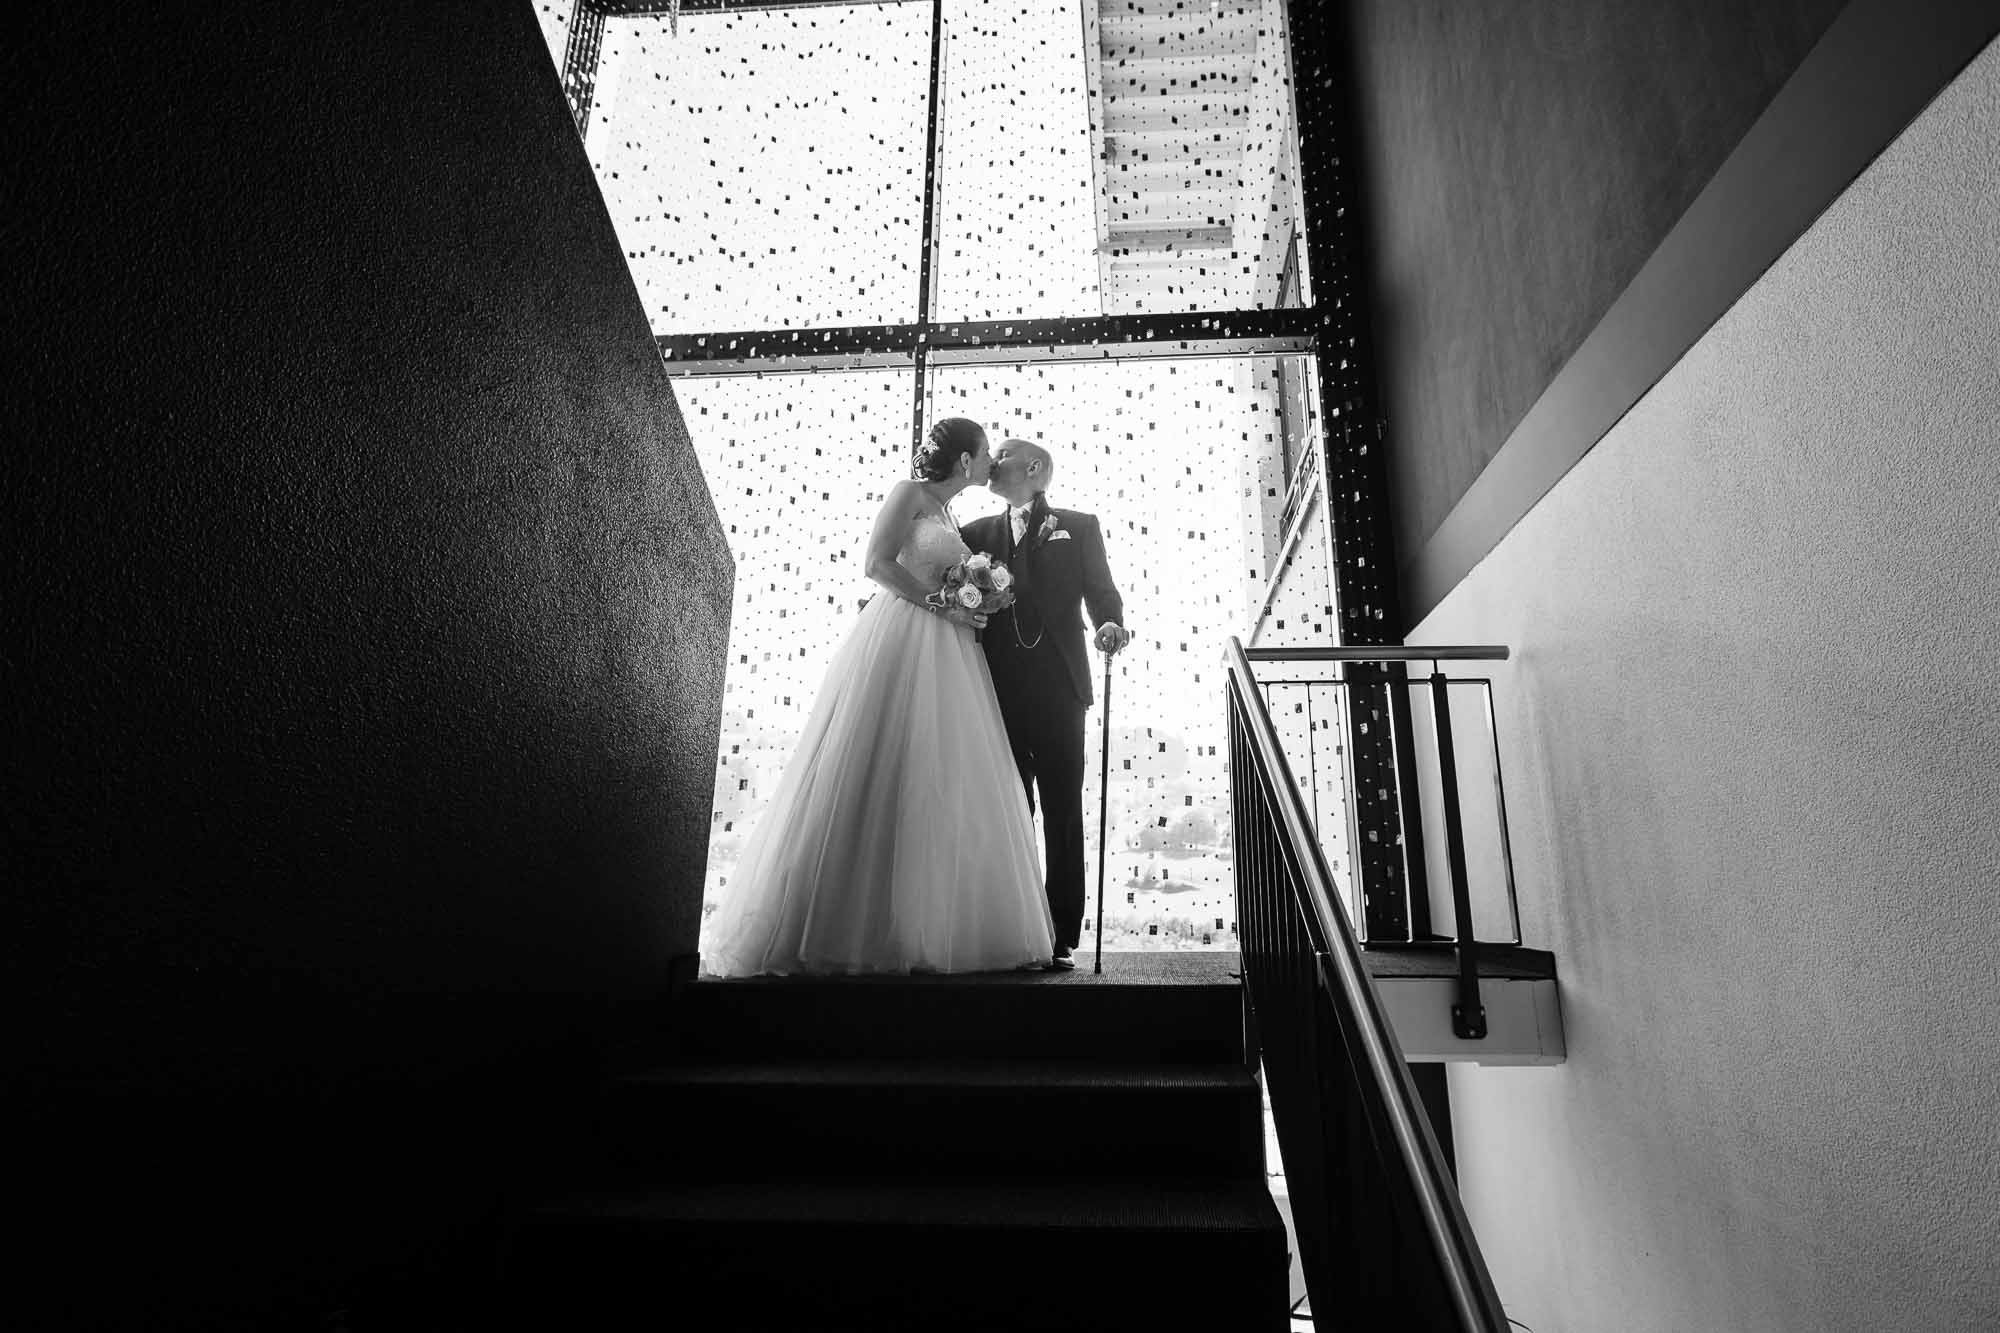 Brautpaar küsst sich im Treppenhaus vor Fenster